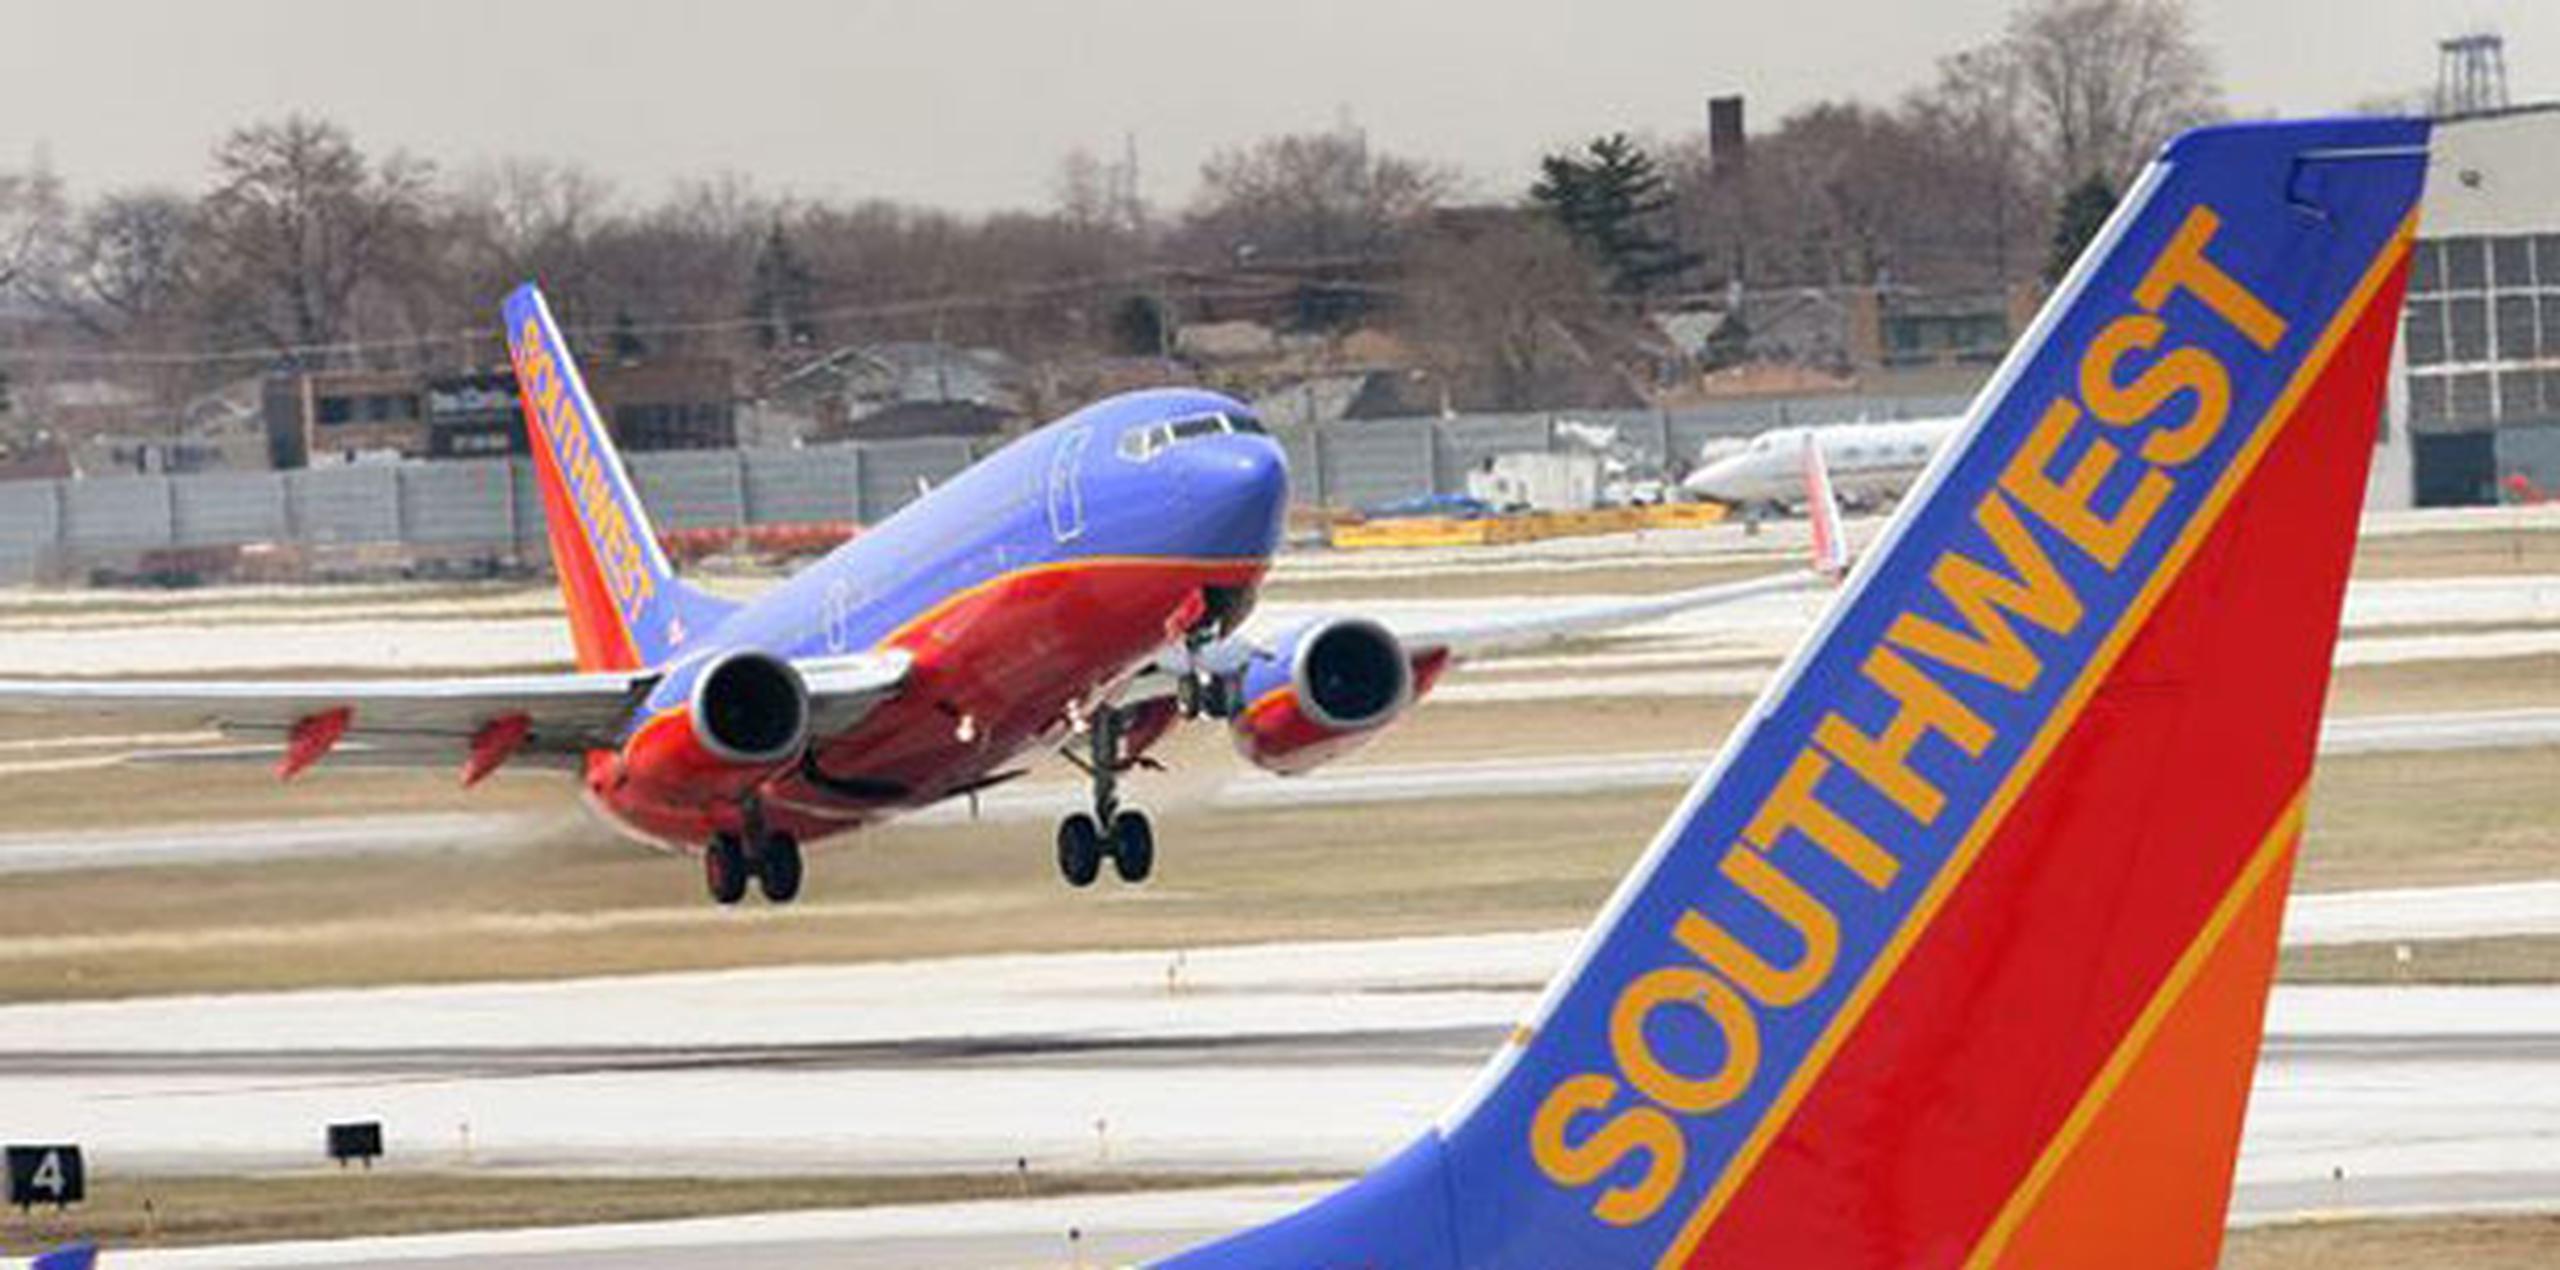 Los dos pilotos han negado las acusaciones y Southwest emitió un comunicado el sábado en el que rechazó colocar cámaras en los sanitarios de sus aviones. (Archivo)